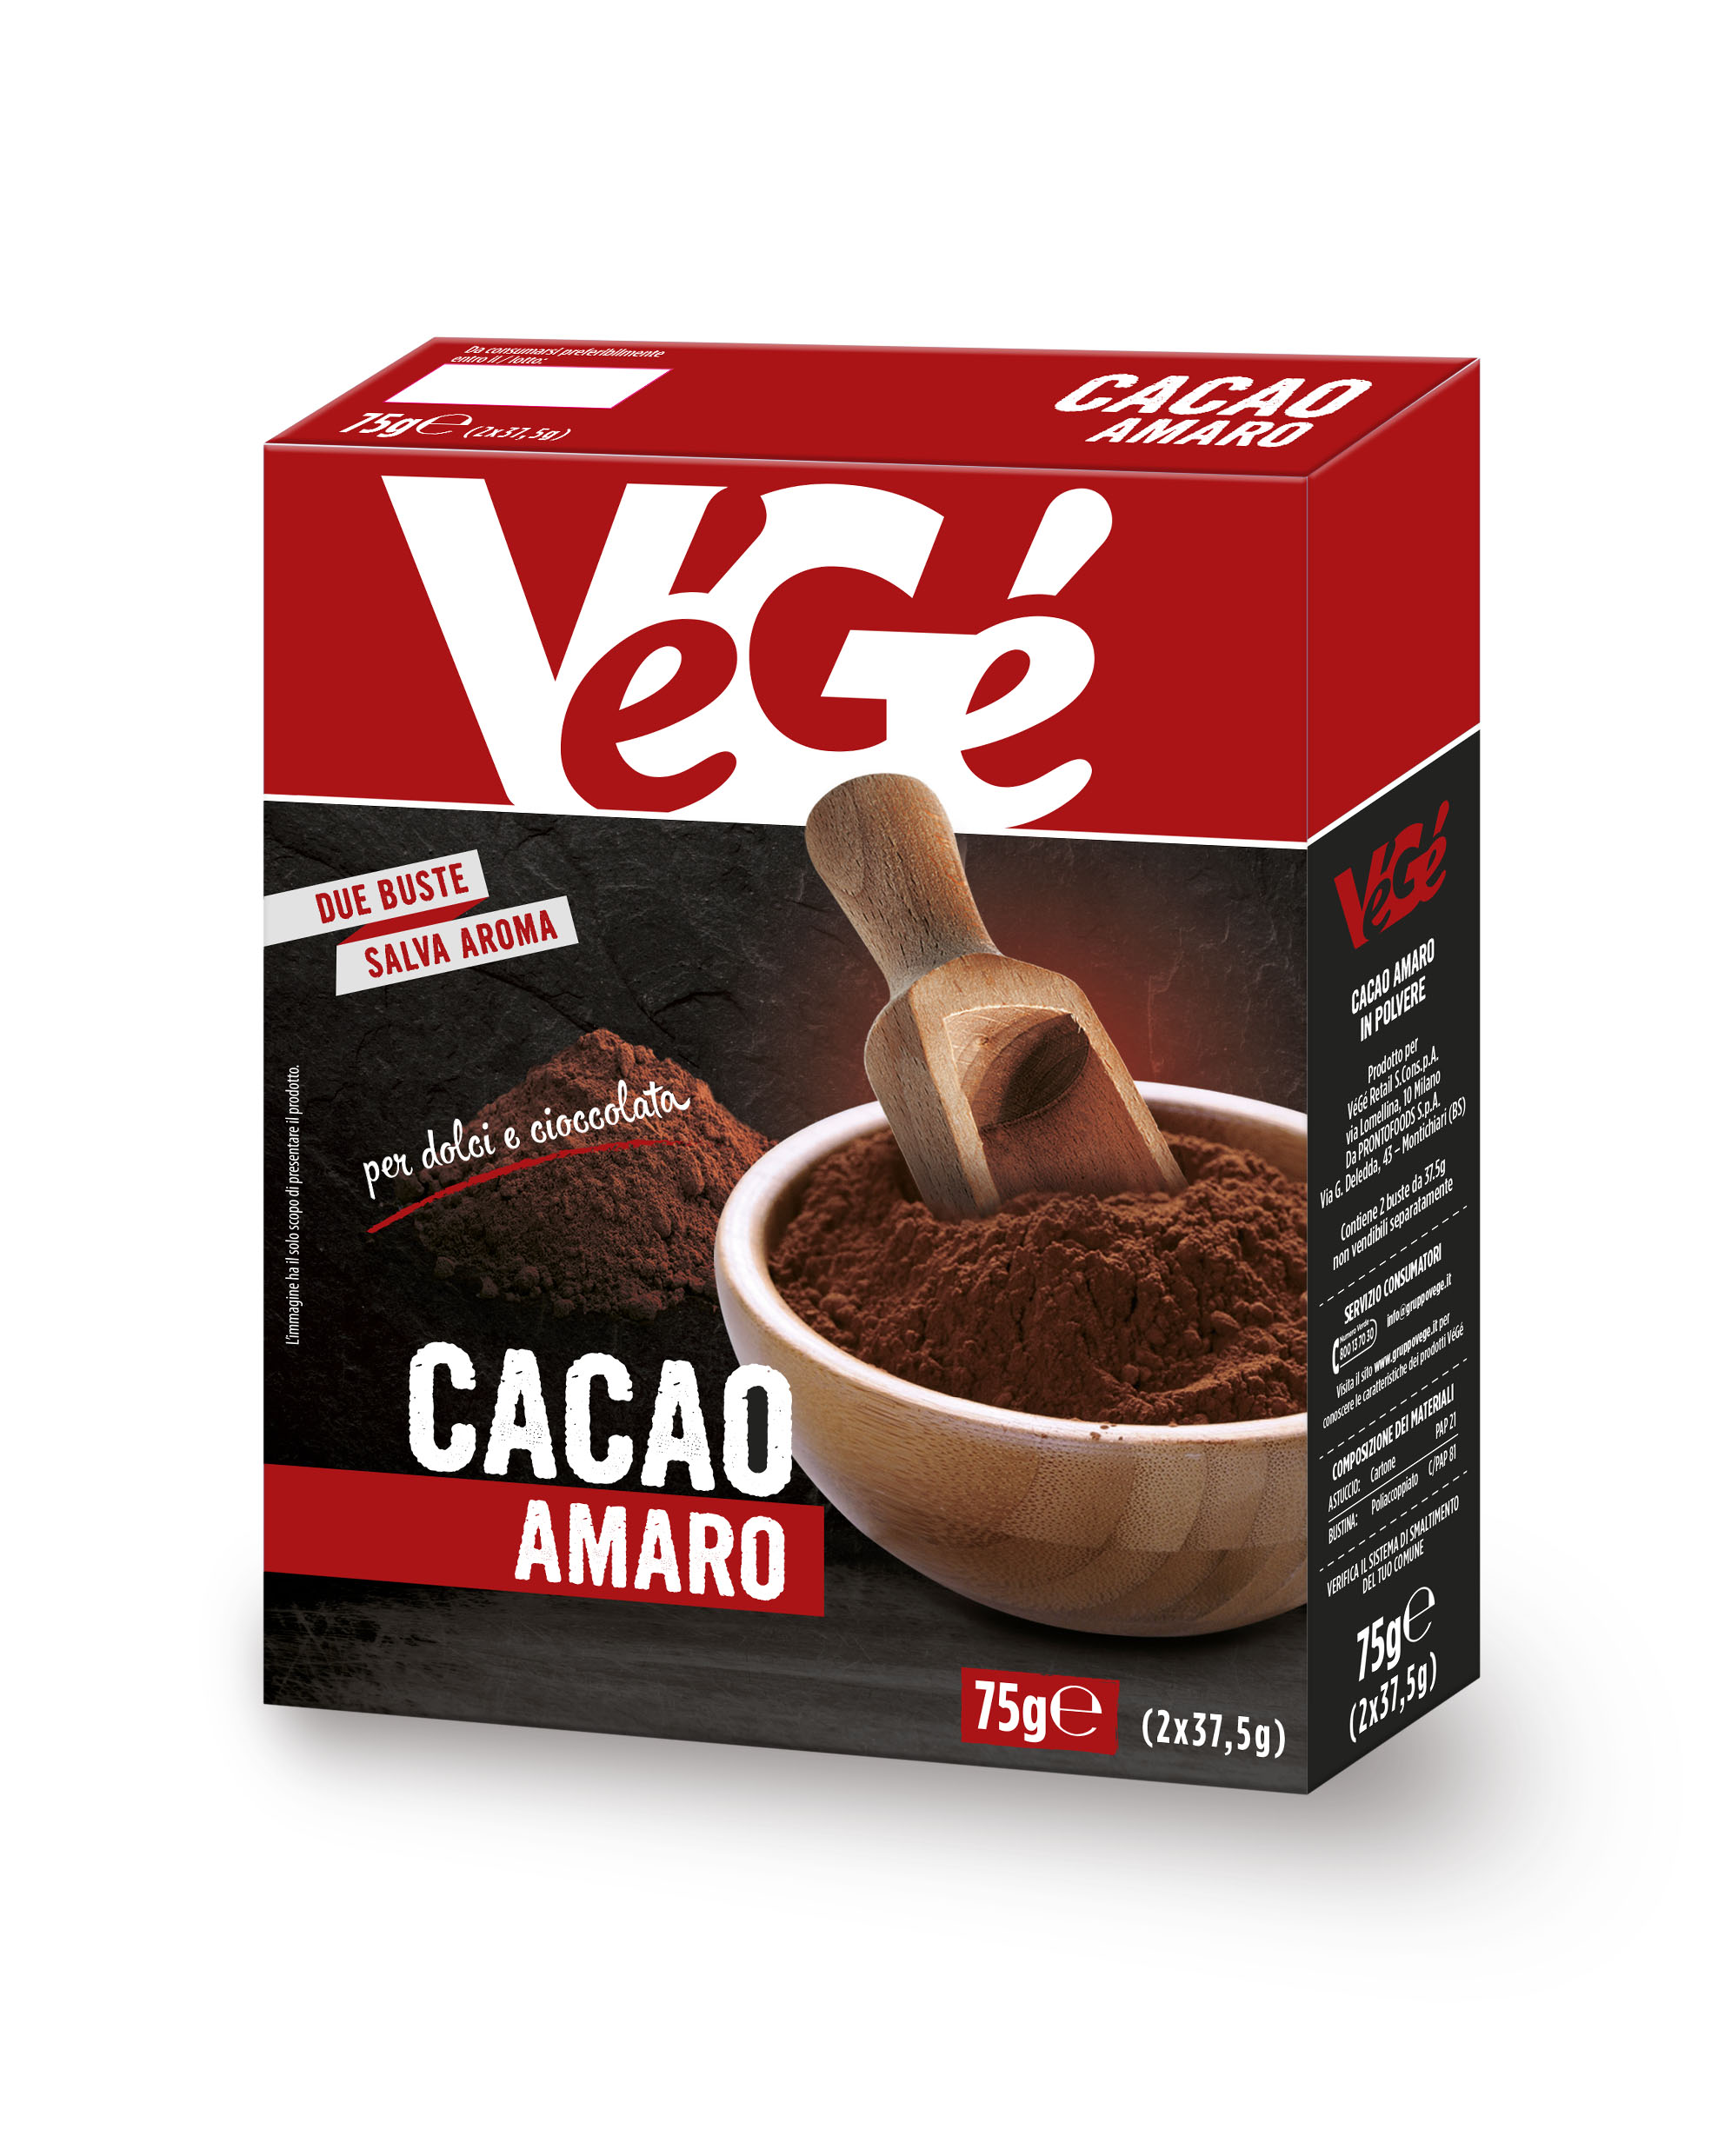 Cacao amaro Vegé GDO (Grande Distribuzione Organizzata)